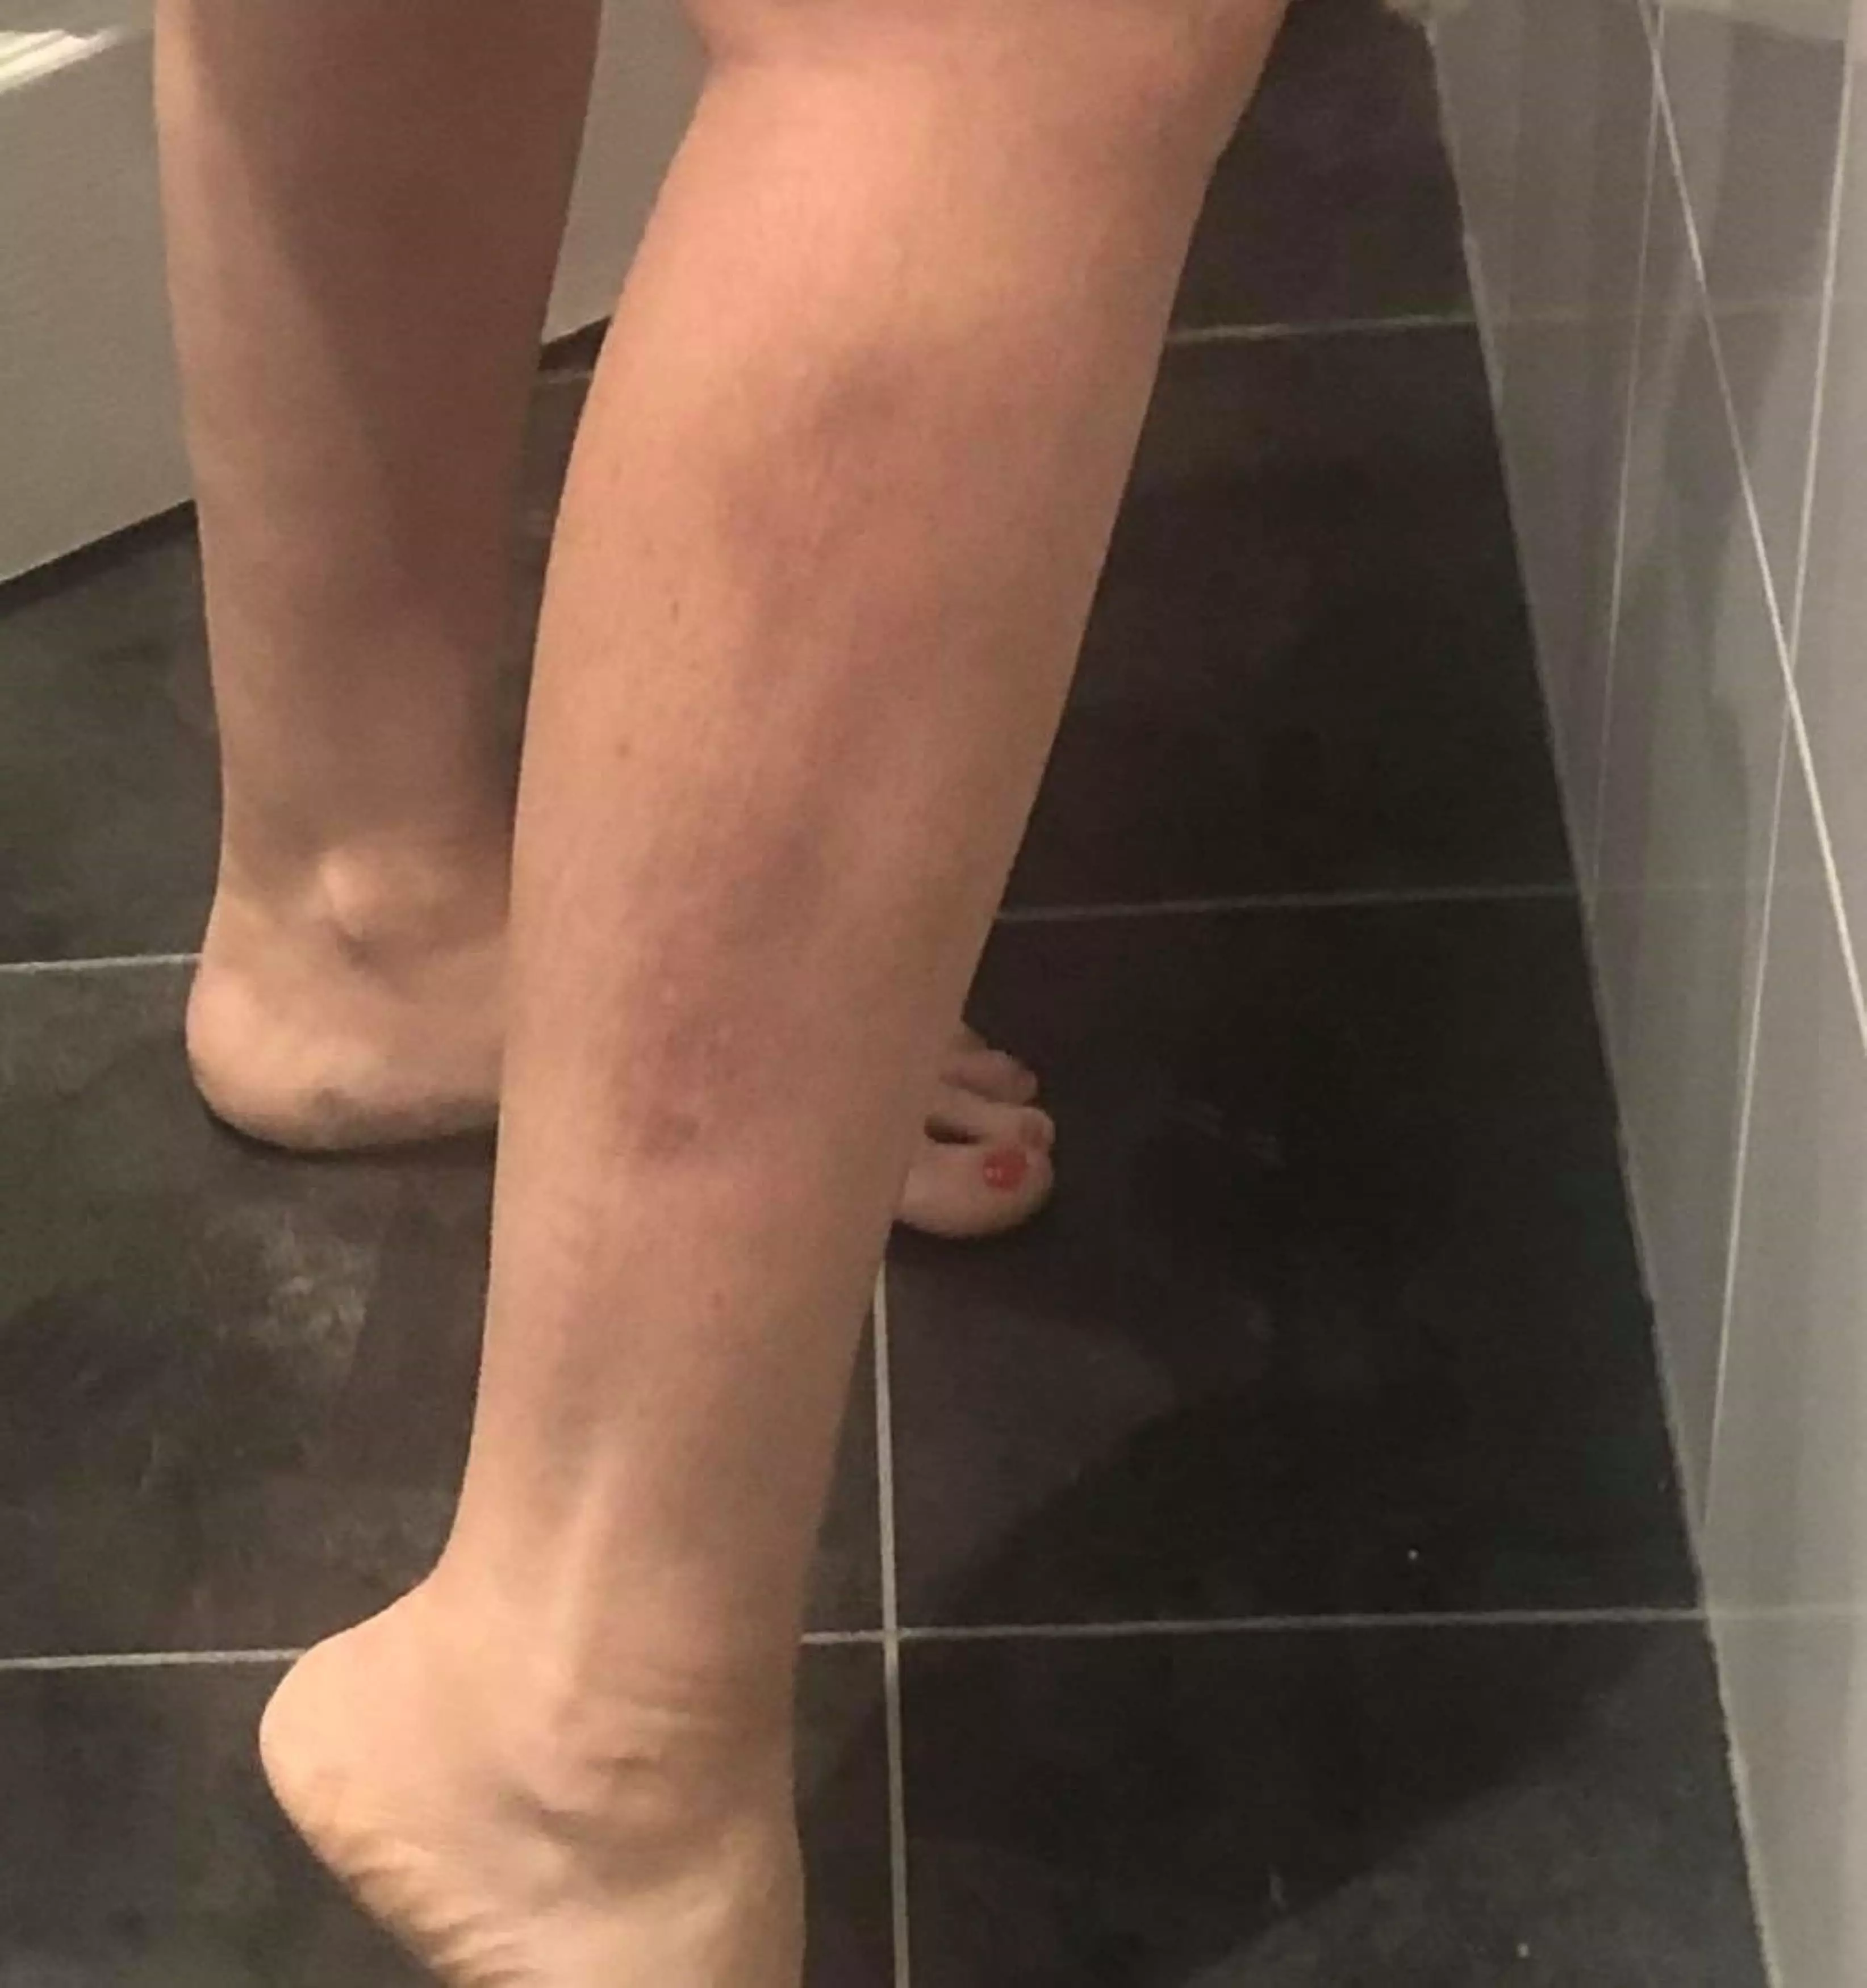 Caroline started noticing strange symptoms, like 'scar tissue' forming on her leg (